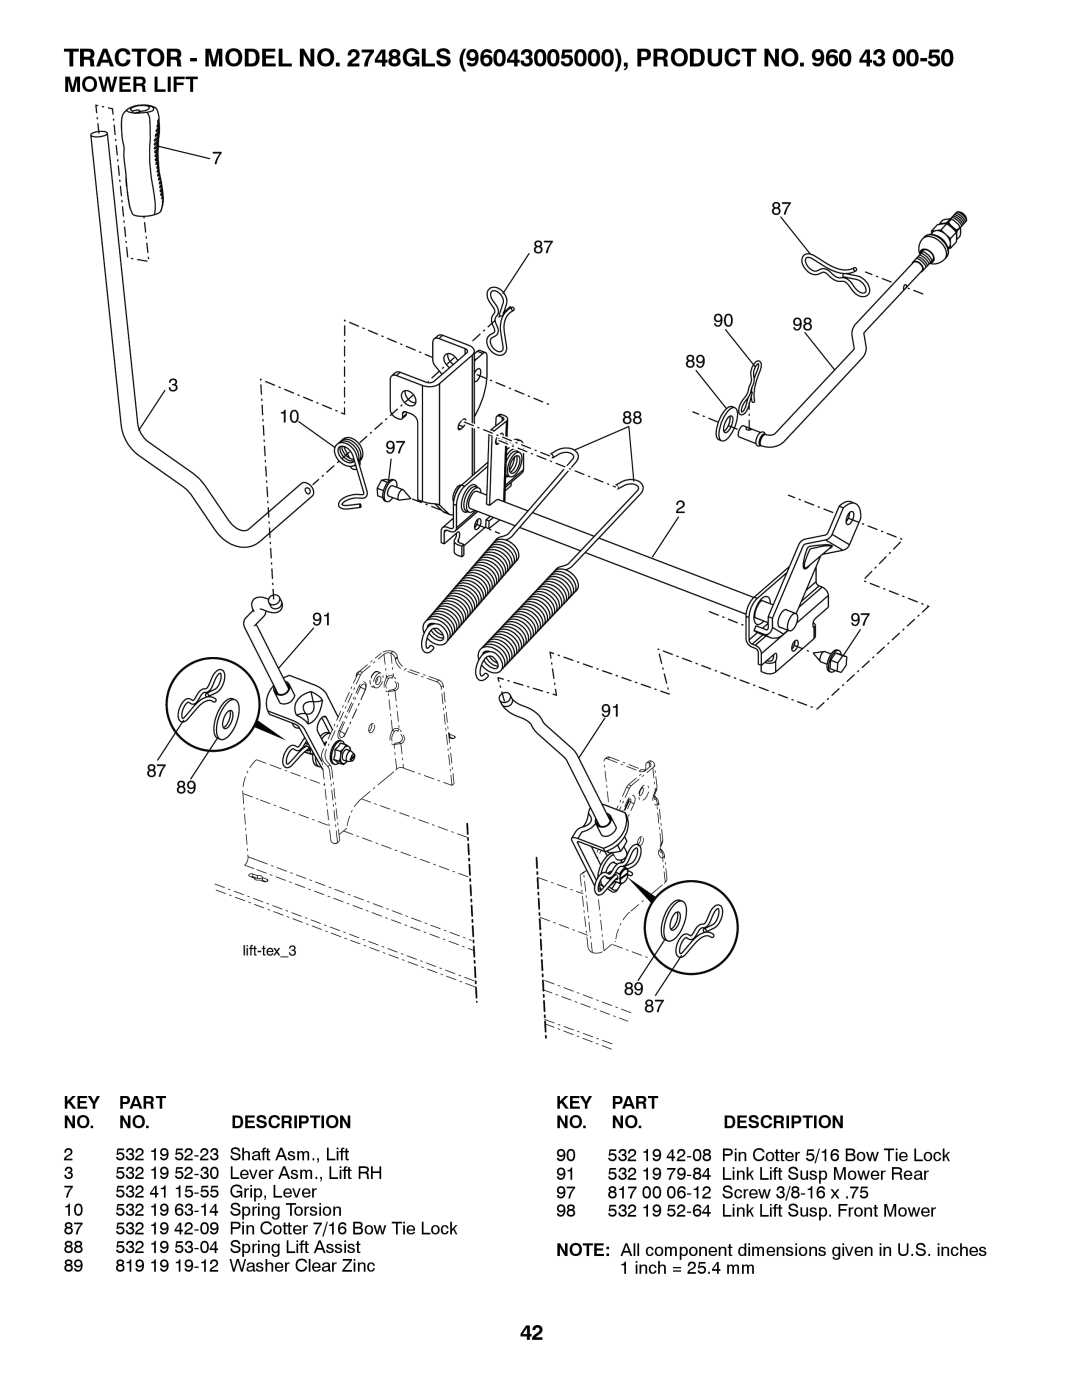 Husqvarna 2748 GLS (CA) manual Mower Lift, 7 87 87 90 89 3, 97 2, 91 87 89, 89 87, Part, Description 